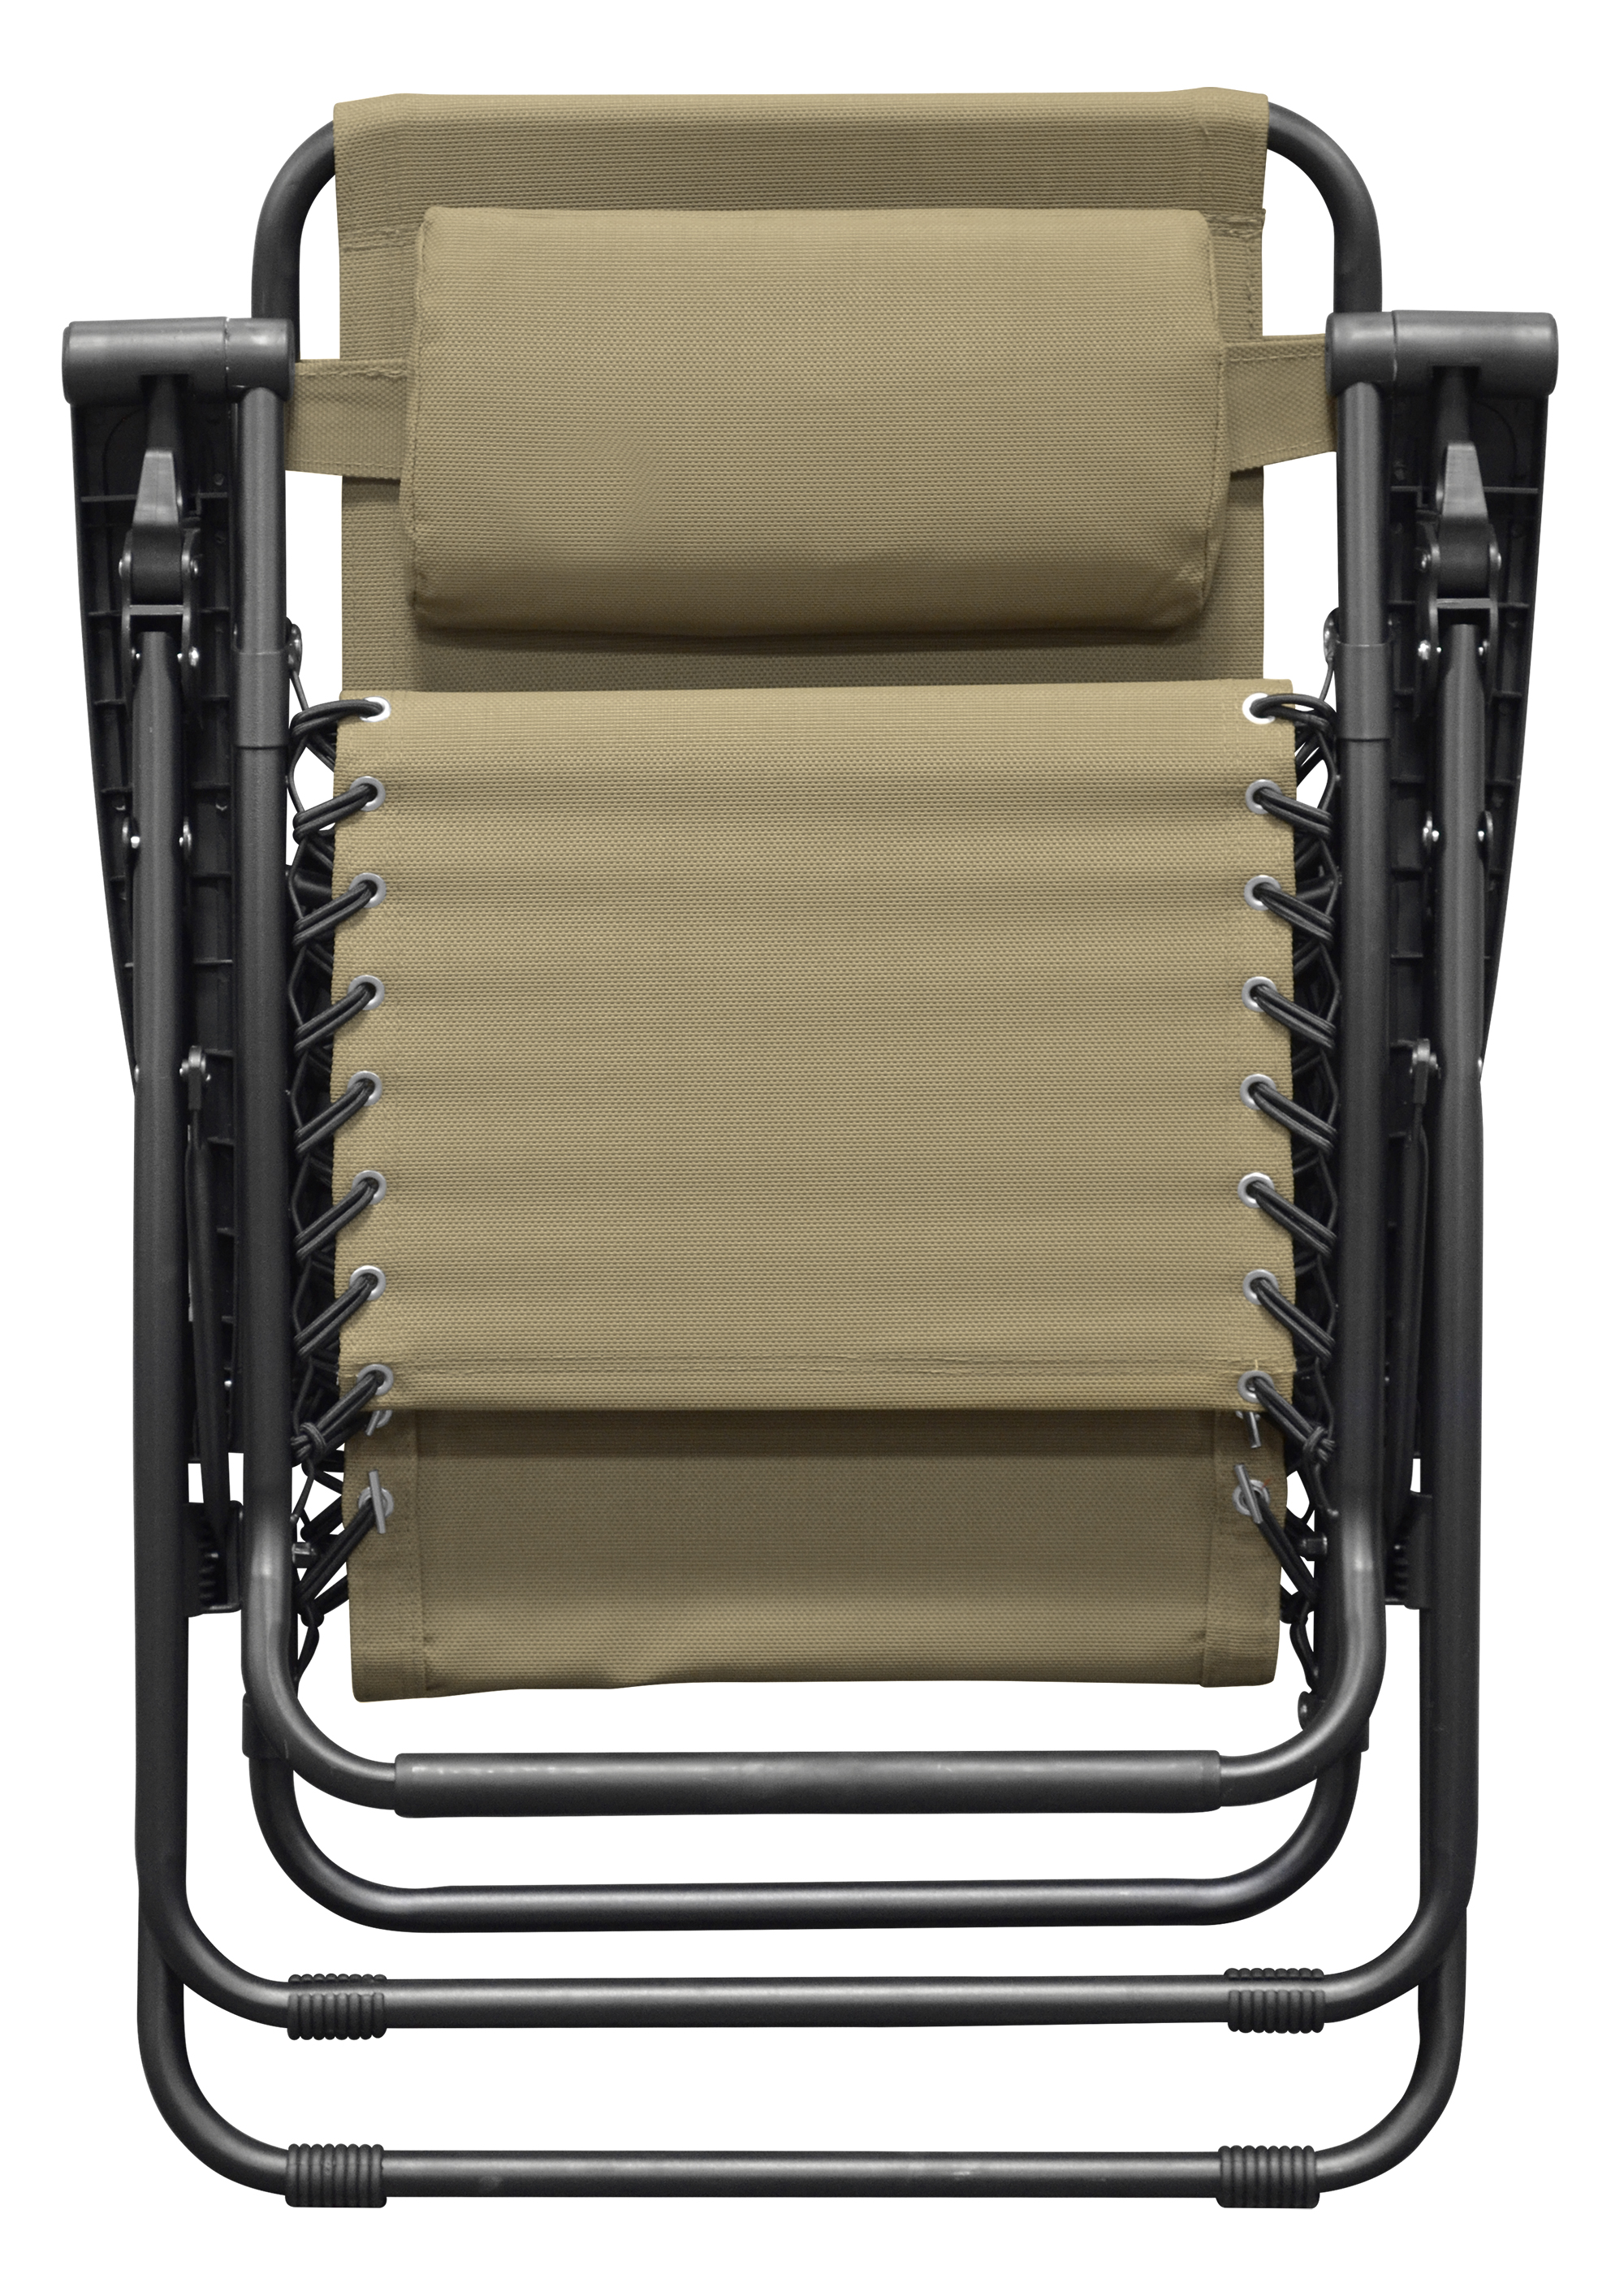 Caravan Sports Zero Gravity Chair, Tan - image 2 of 4